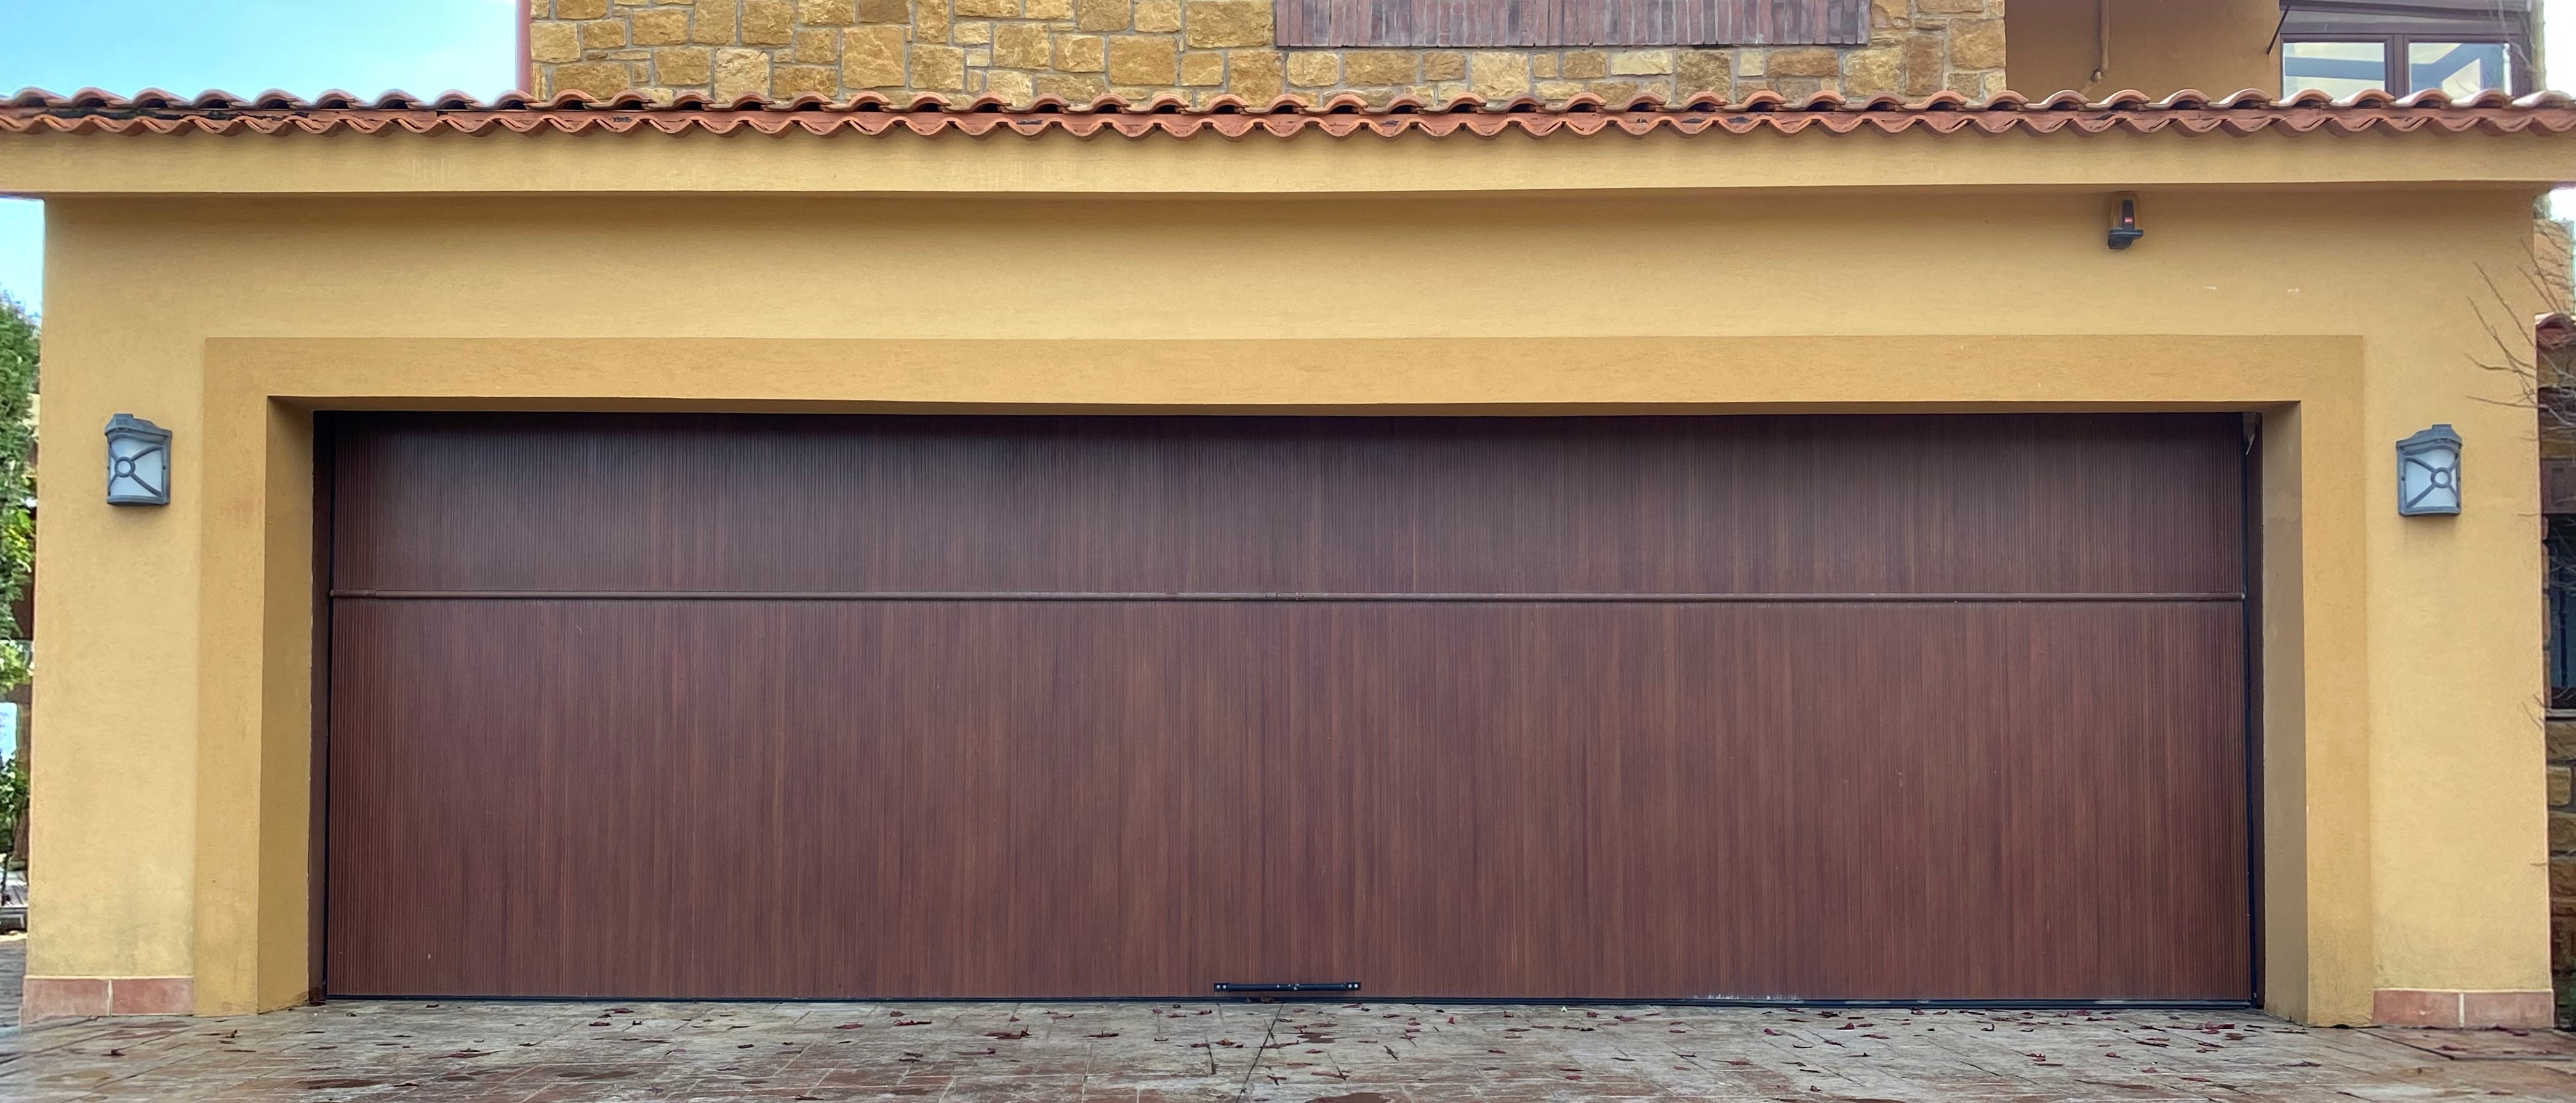 Wood-look aluminum cladded garage doors